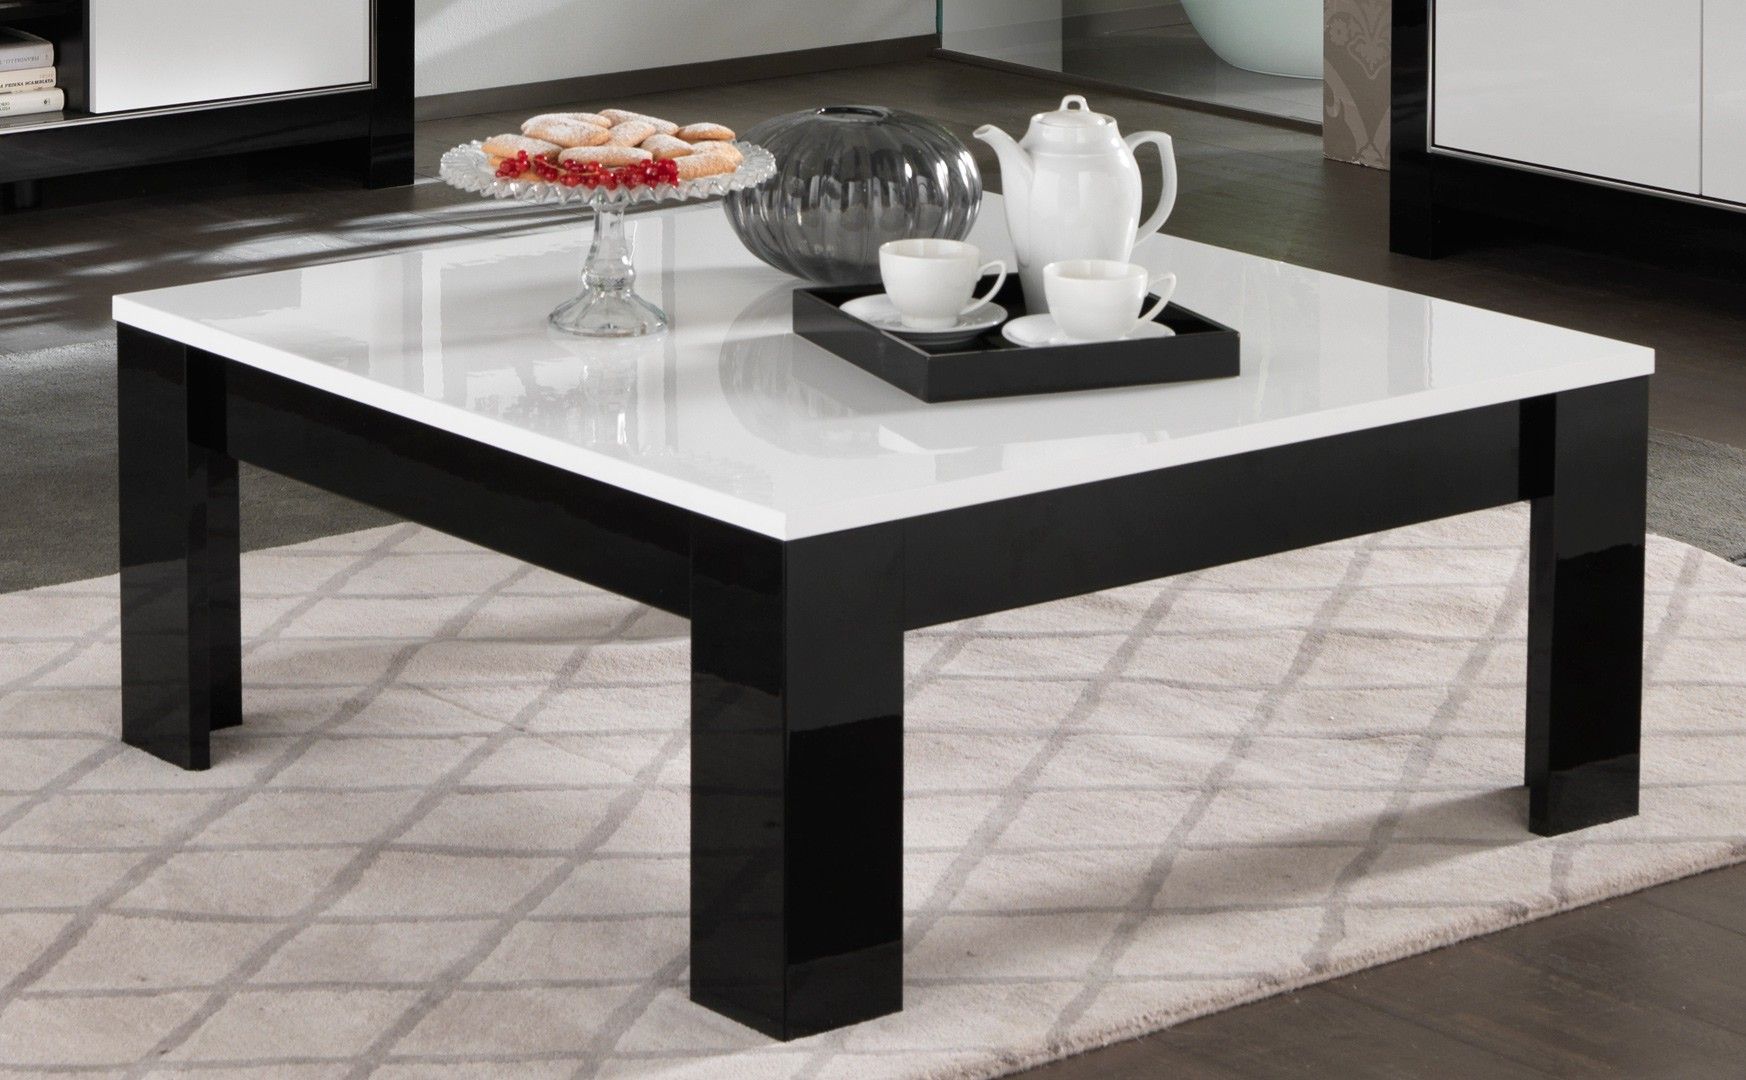 Table basse design laque blanc et noir